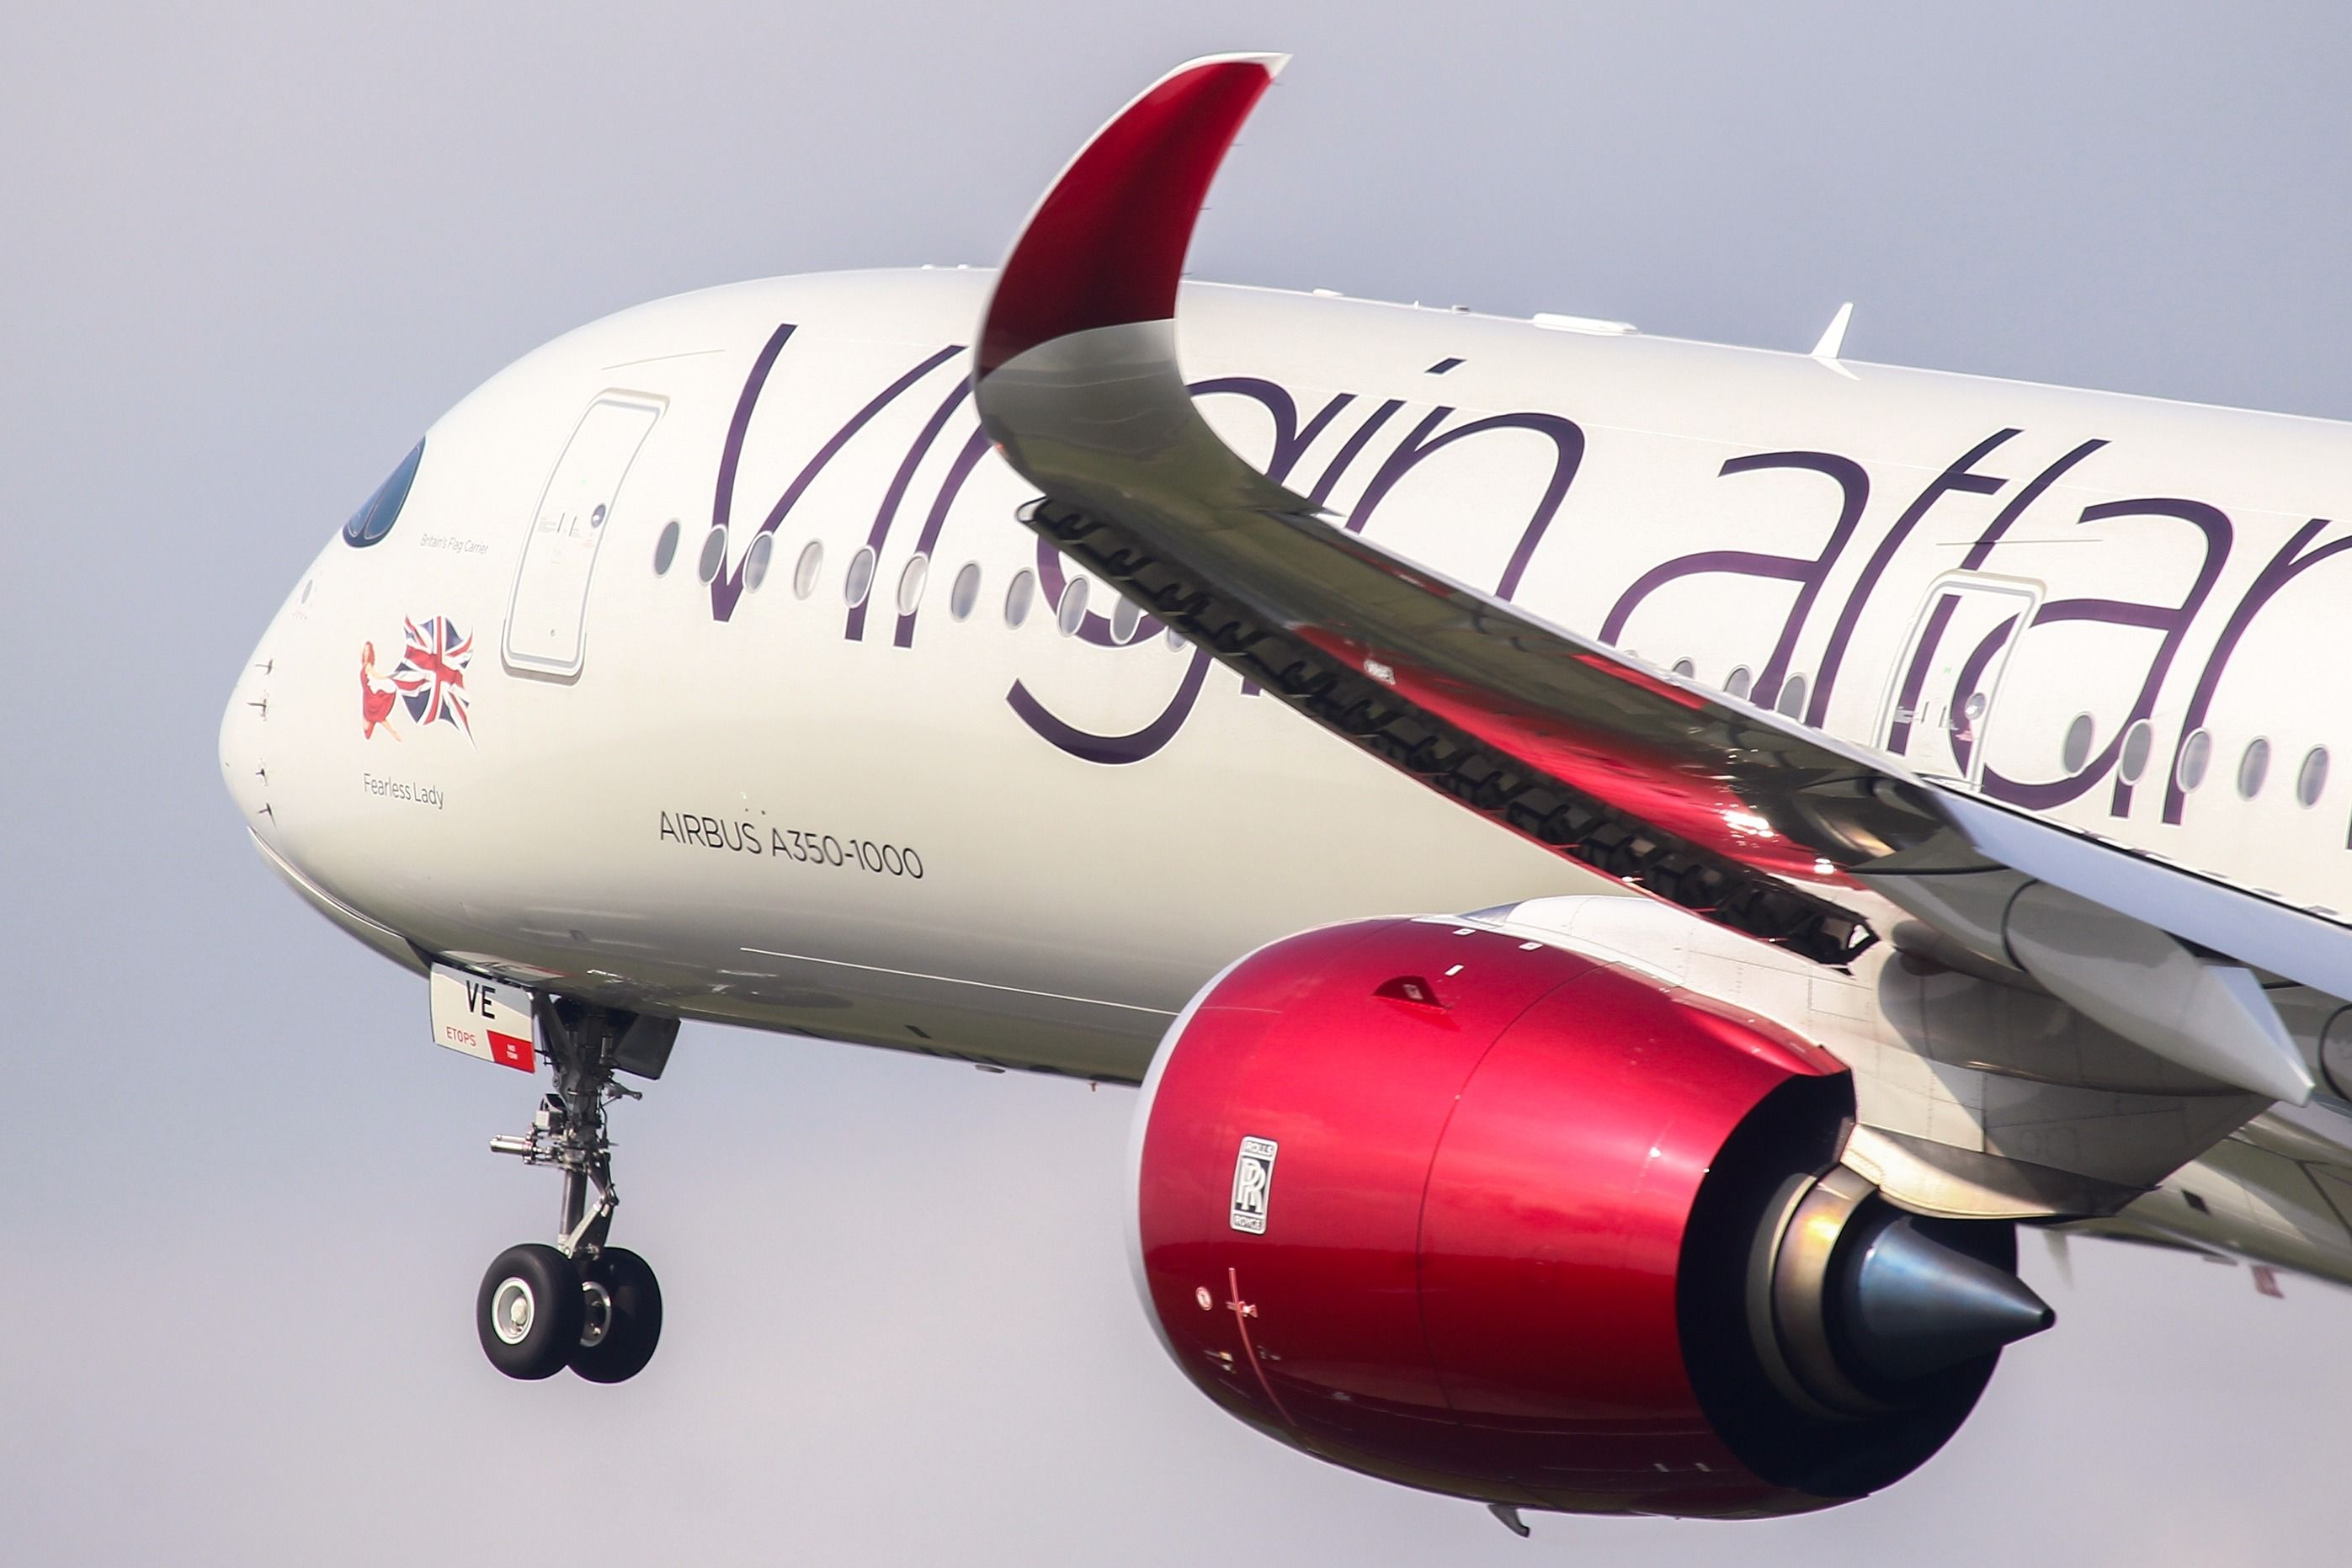 Virgin Atlantic Airbus A350-1000 departing